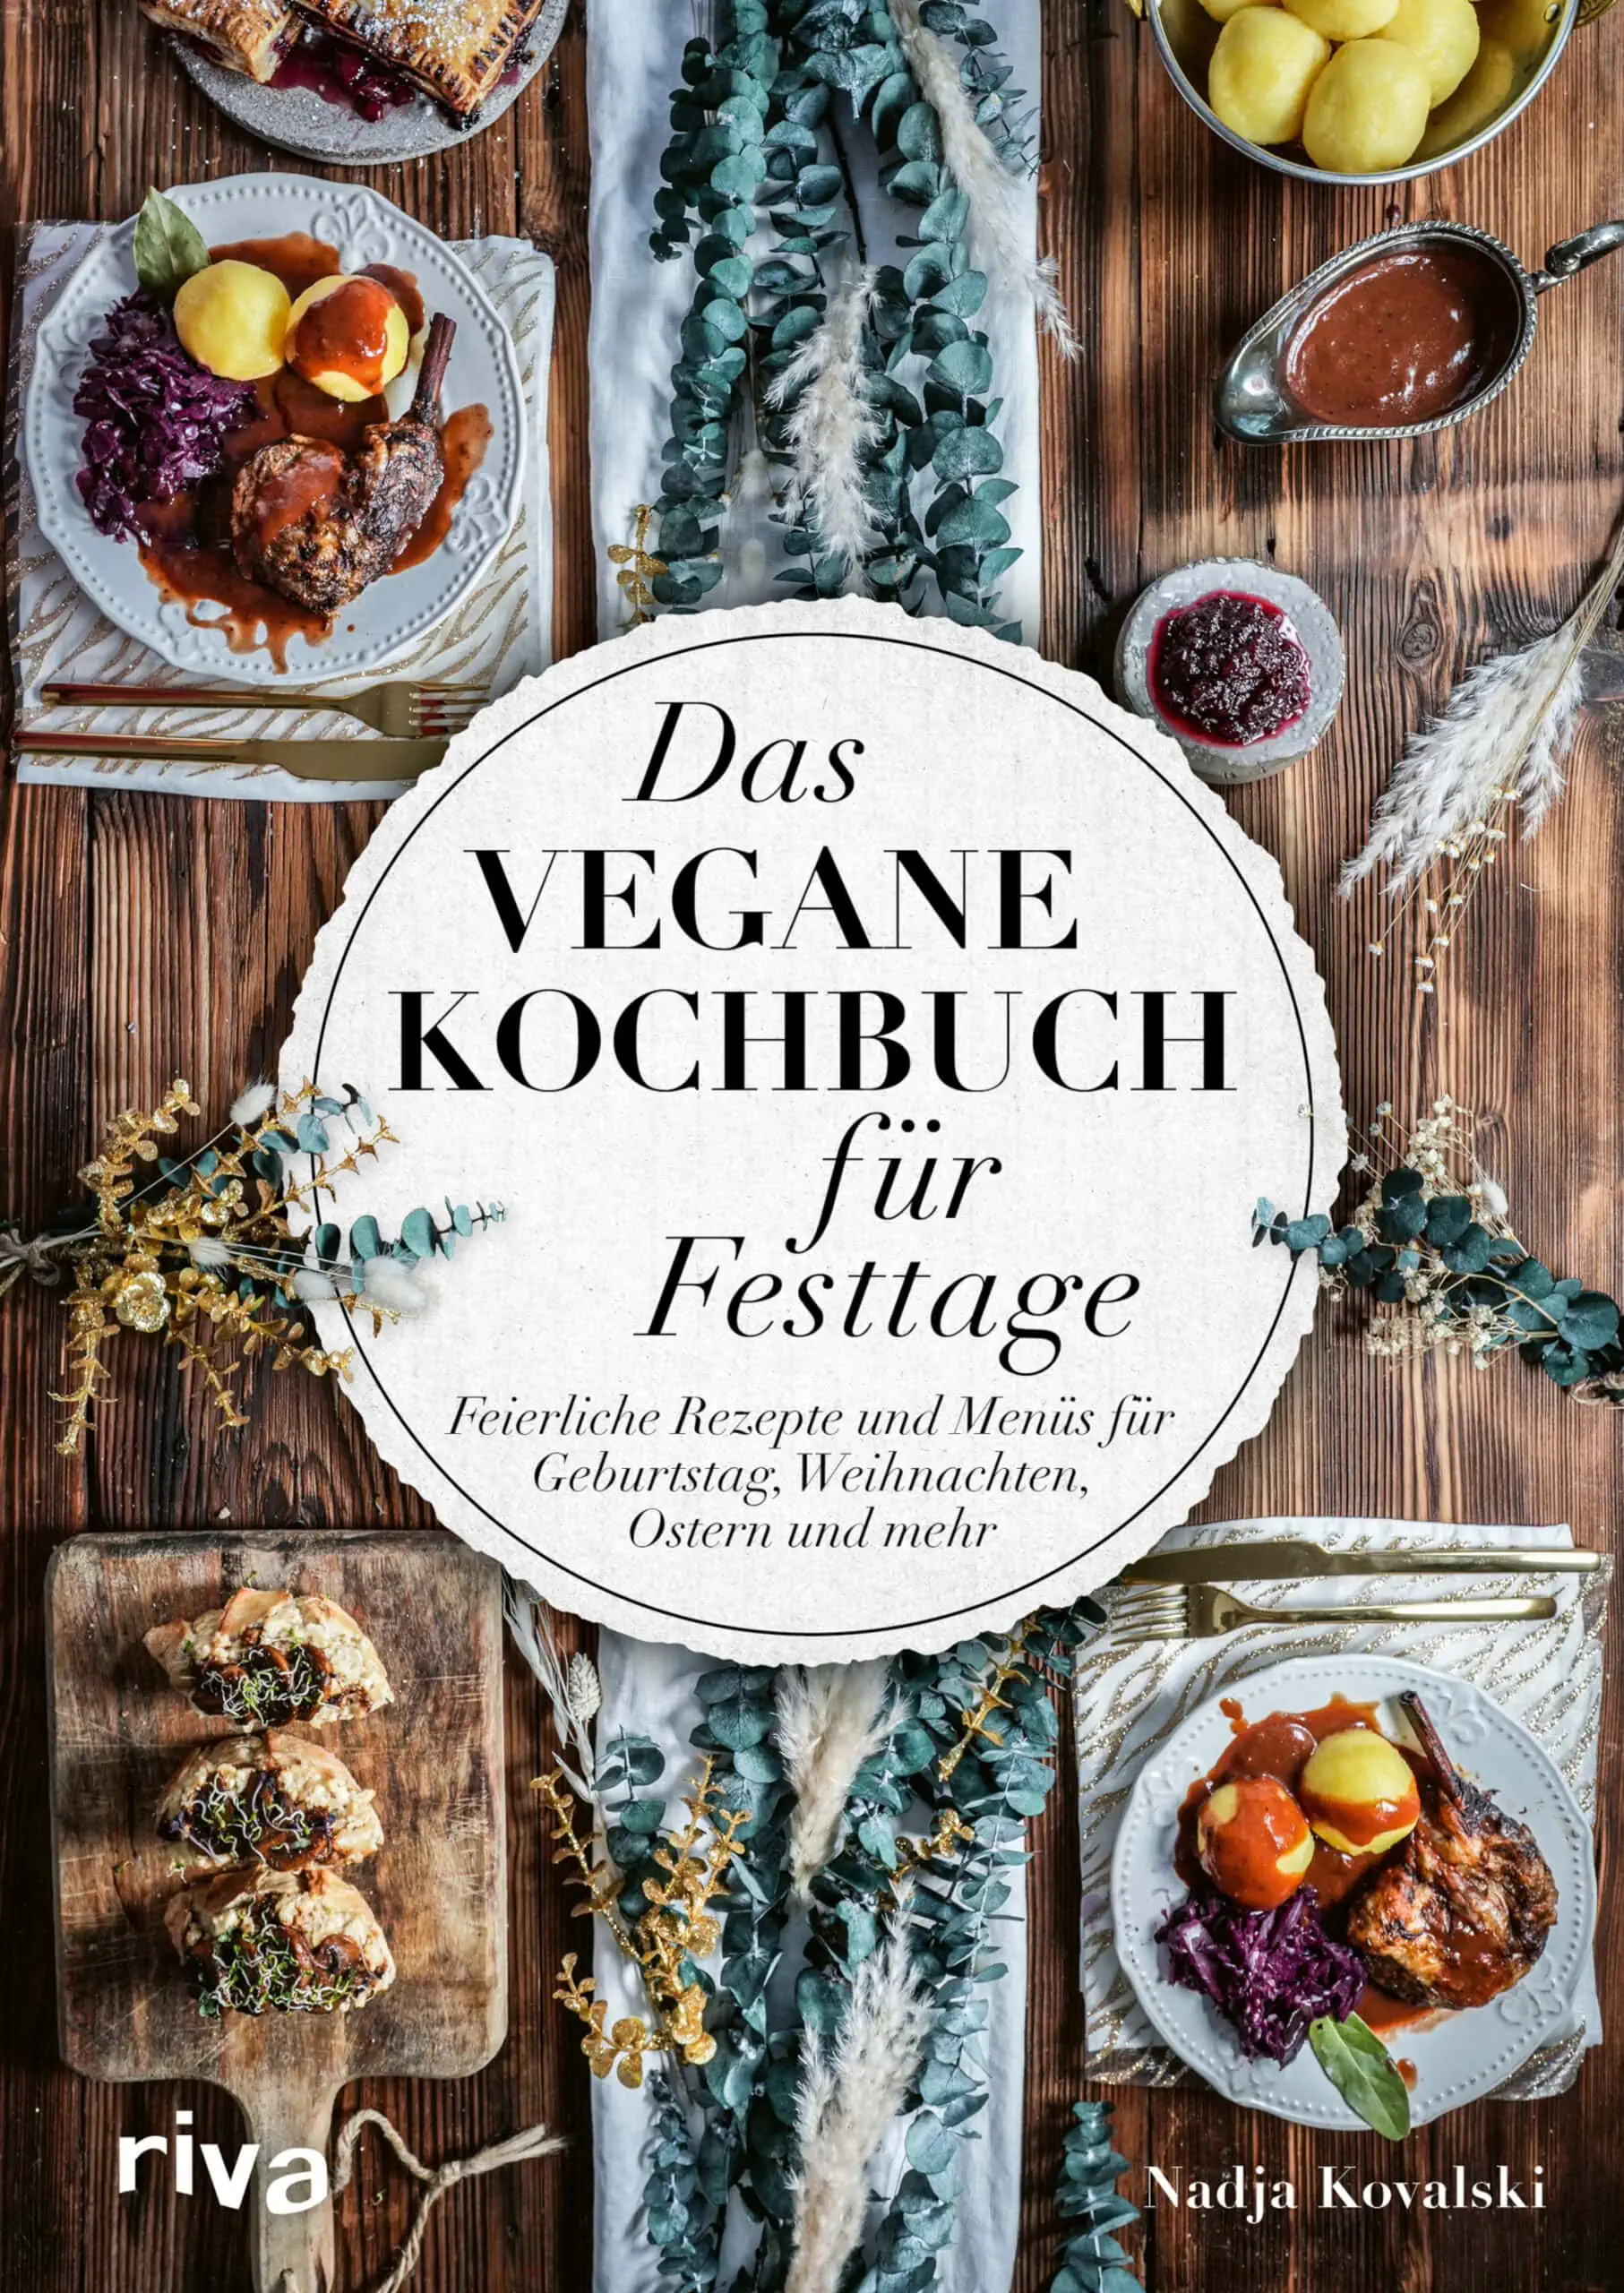 Köstliche Vegane Rezepte Wie Heiße Kirschtaschen Oder Seitanbraten Für Die Festtage // Himbeer